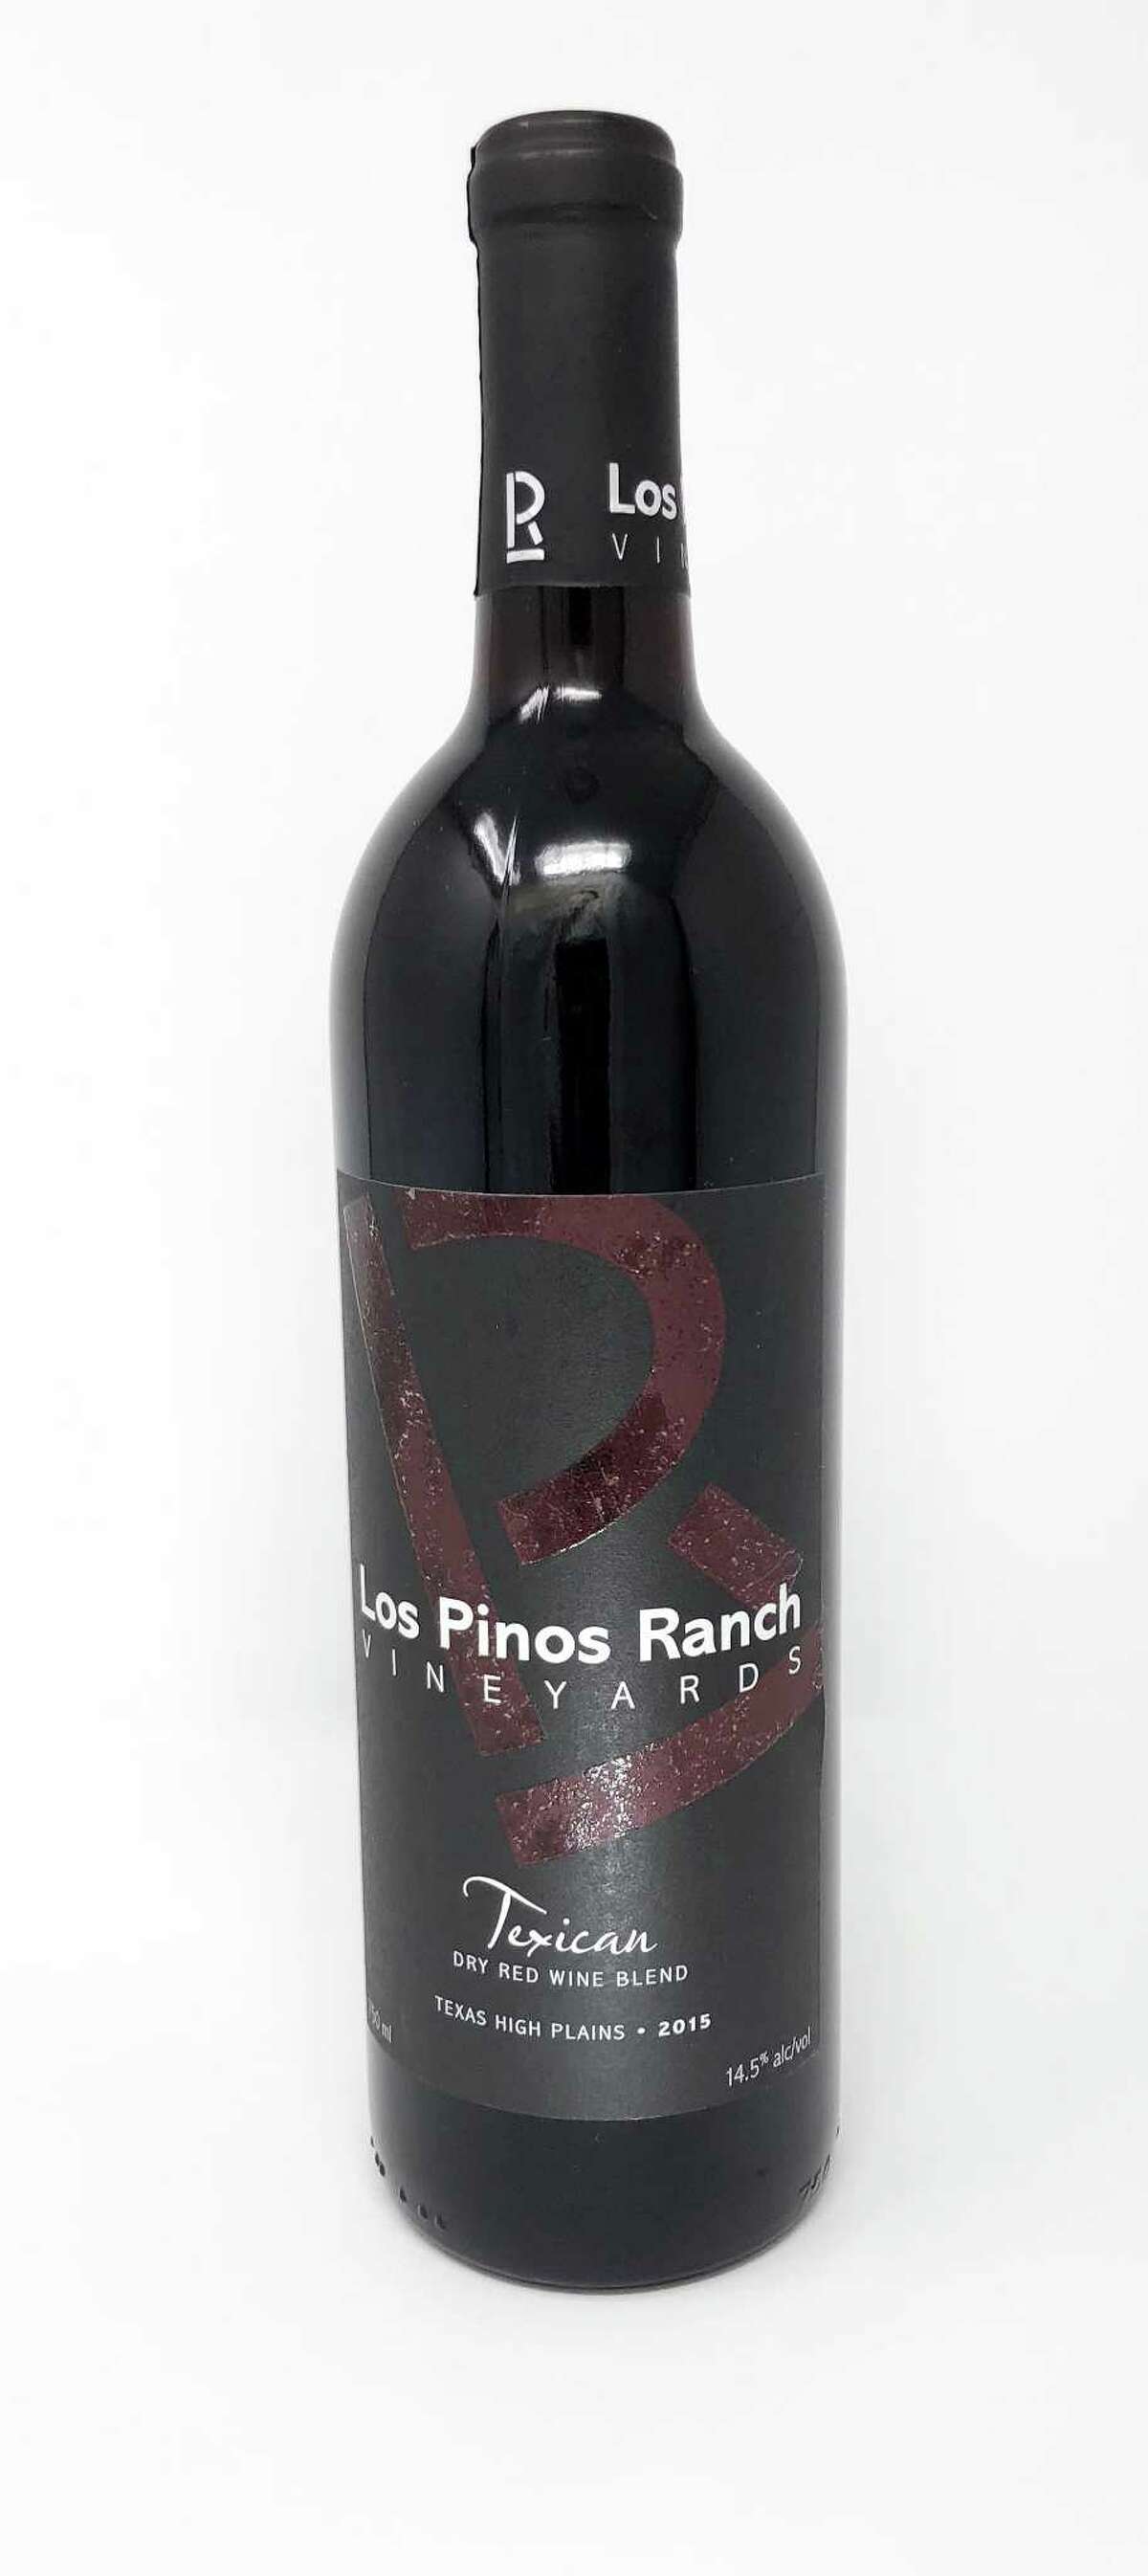 2015 Los Pinos Ranch Vineyards Texican